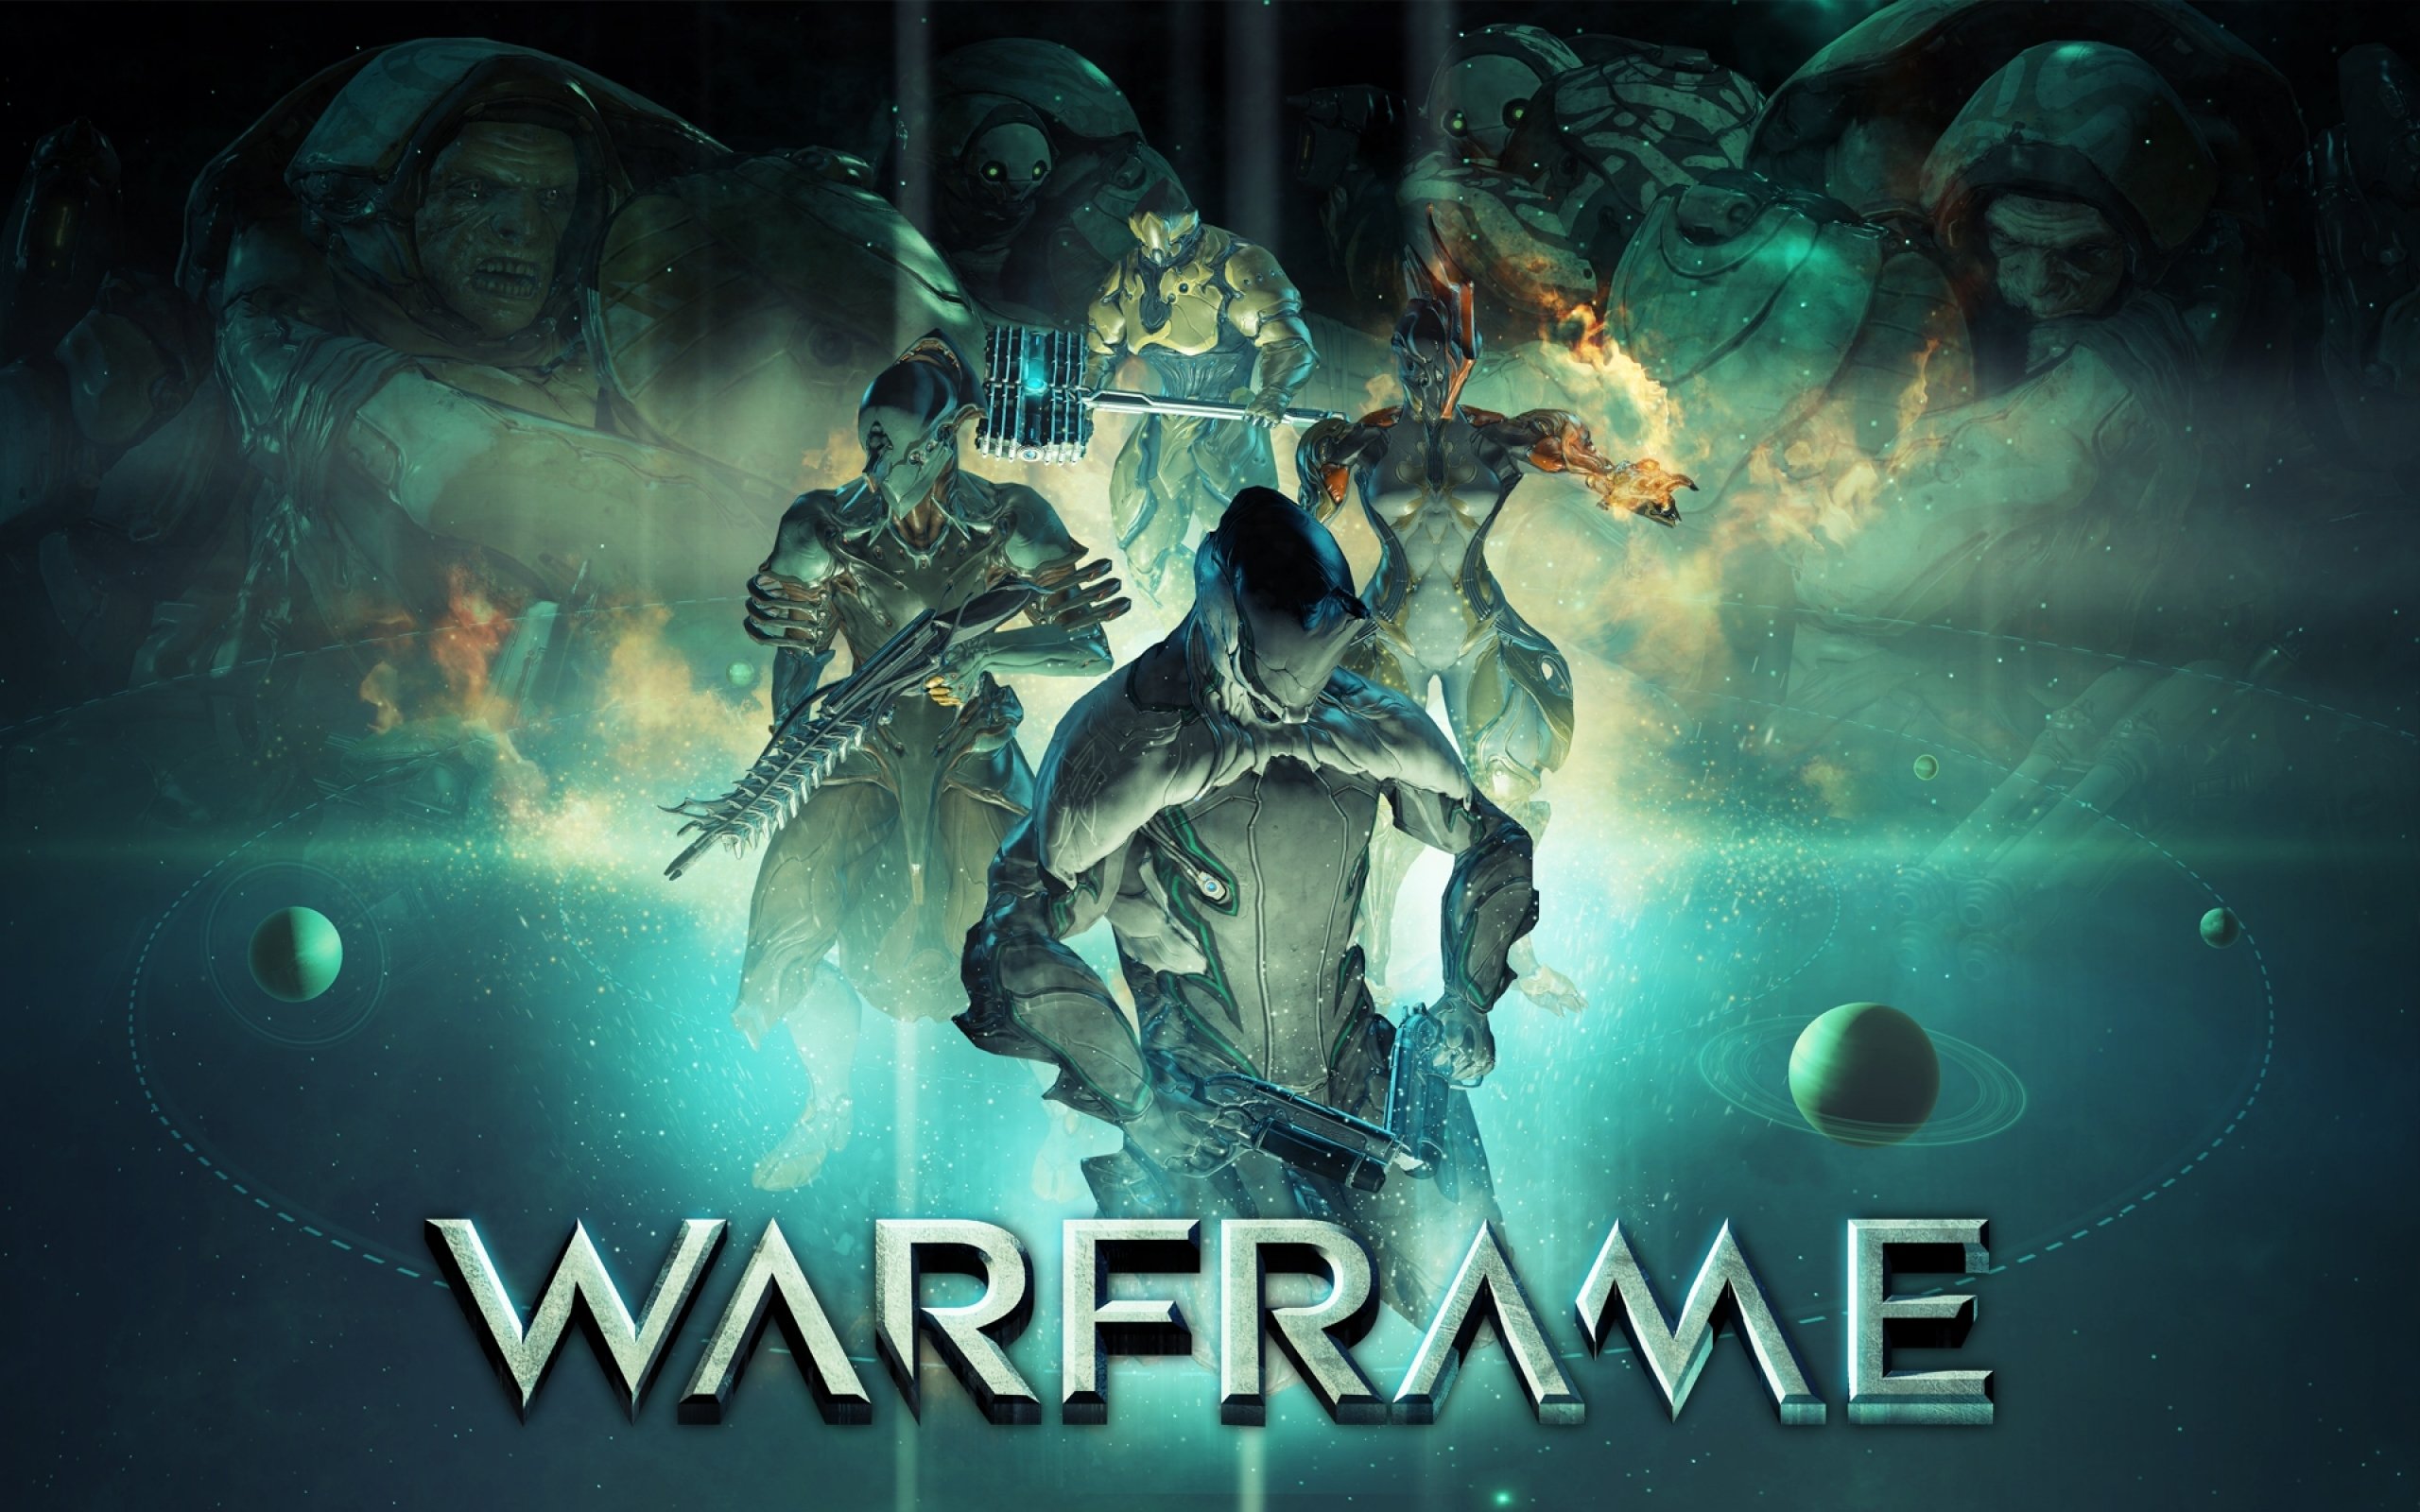 warframe, Warrior, Shooter, Sci fi, Robot Wallpaper